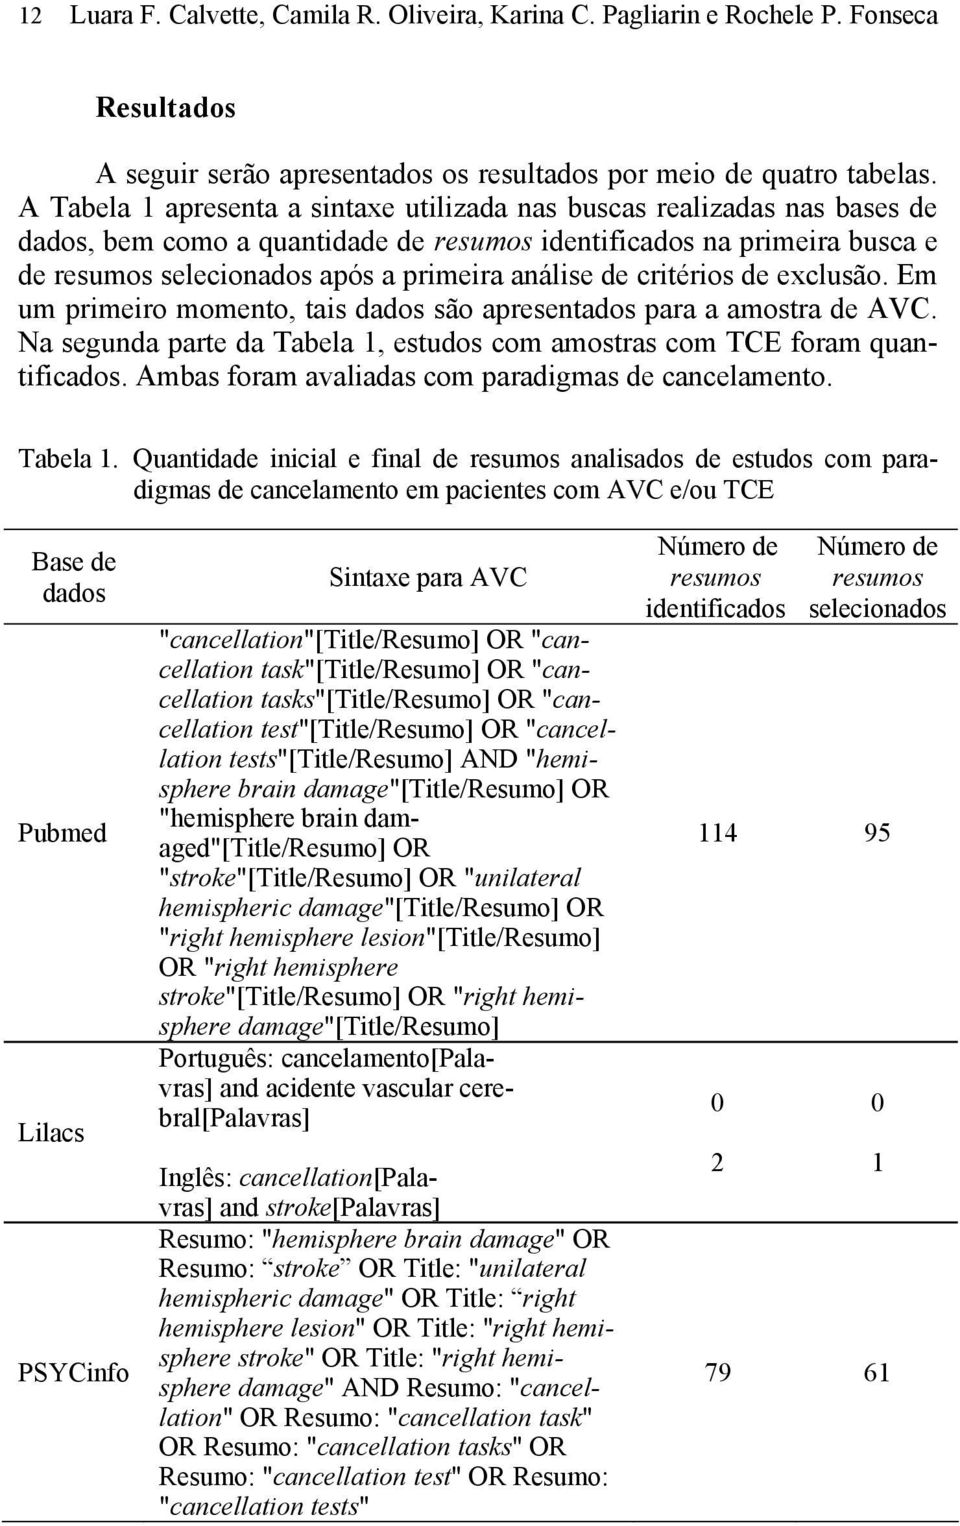 de critérios de exclusão. Em um primeiro momento, tais dados são apresentados para a amostra de AVC. Na segunda parte da Tabela 1, estudos com amostras com TCE foram quantificados.